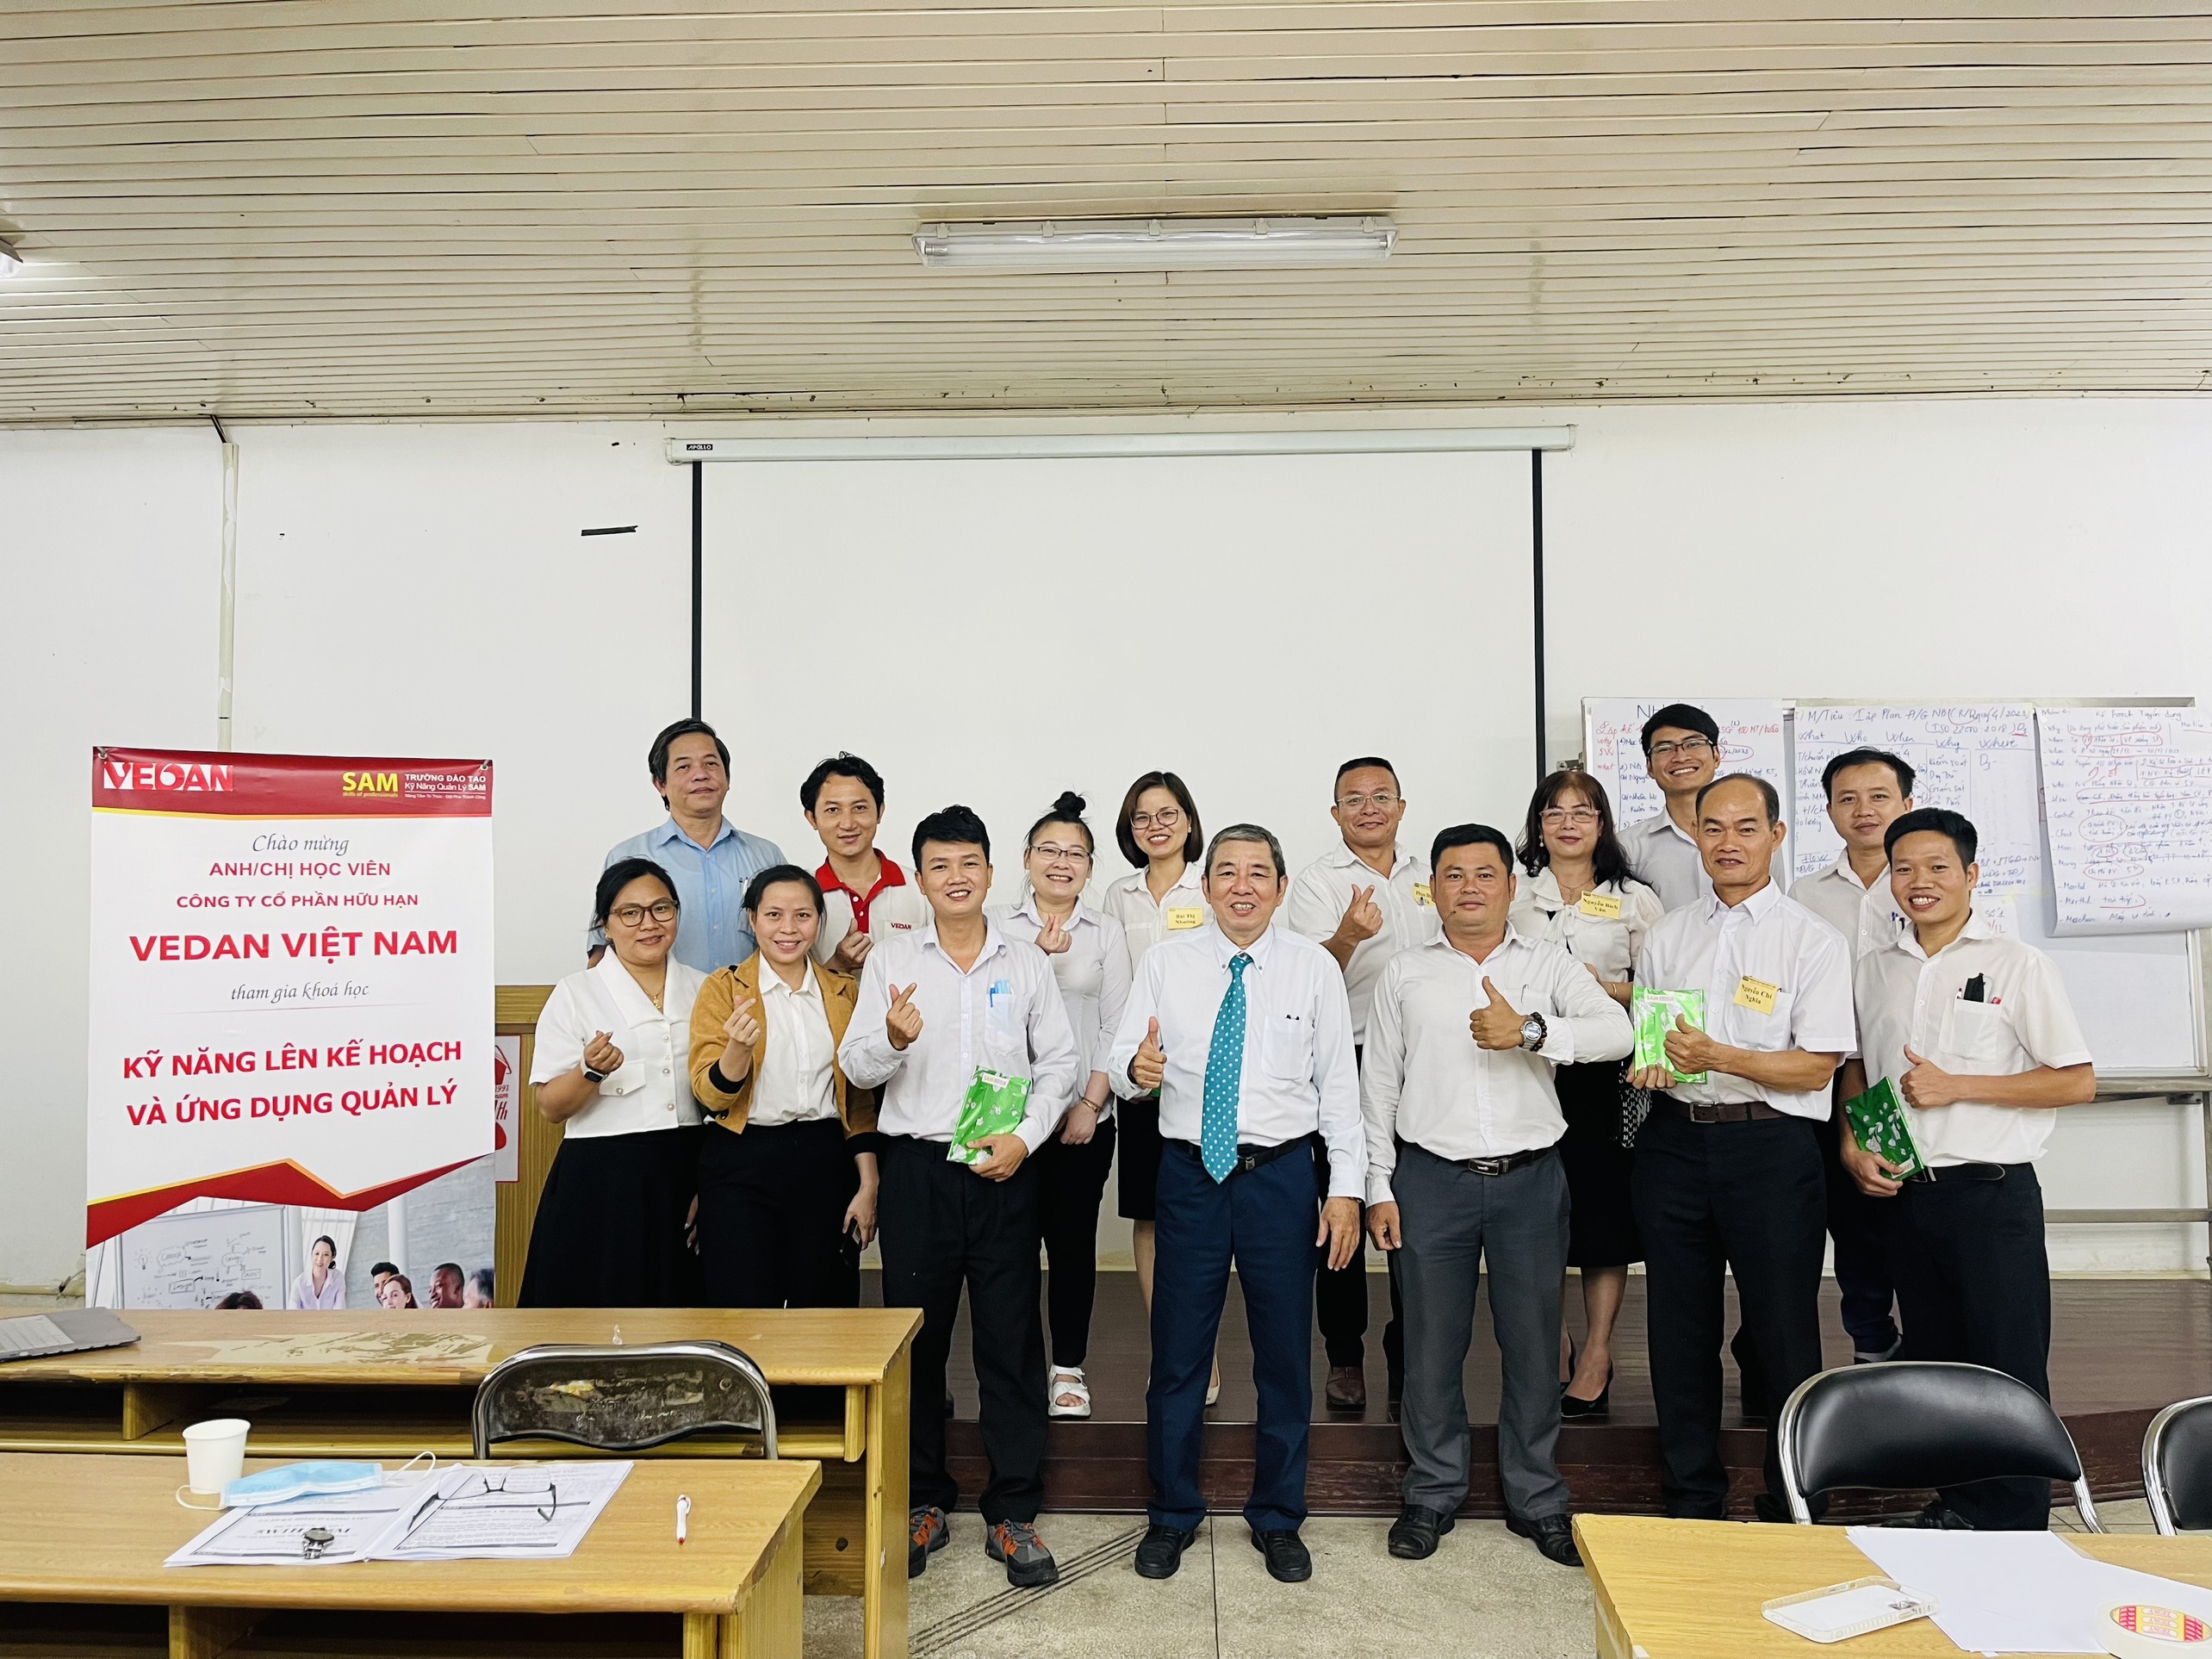 "Kỹ năng lên kế hoạch và ứng dụng quản lý" được tổ chức tại Công ty cồ phần hữu hạn Vedan Việt Nam